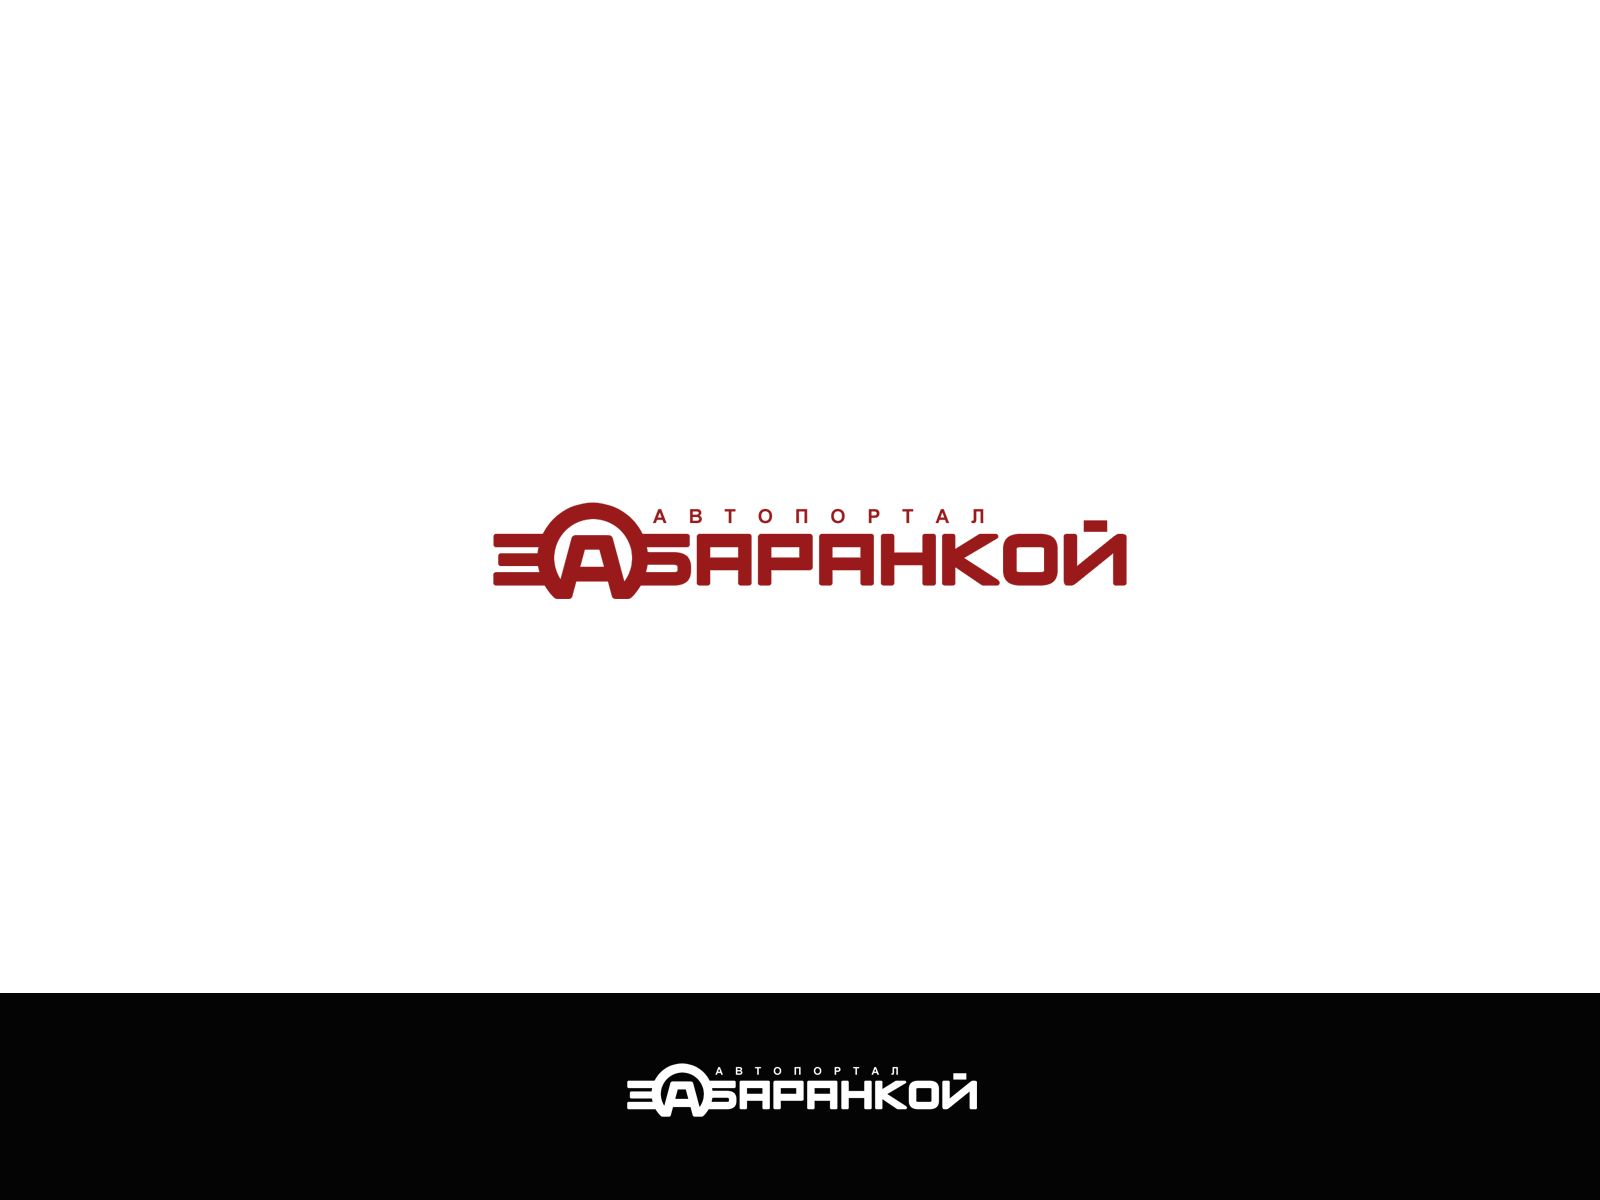 Логотип для ЗА БАРАНКОЙ - дизайнер webgrafika